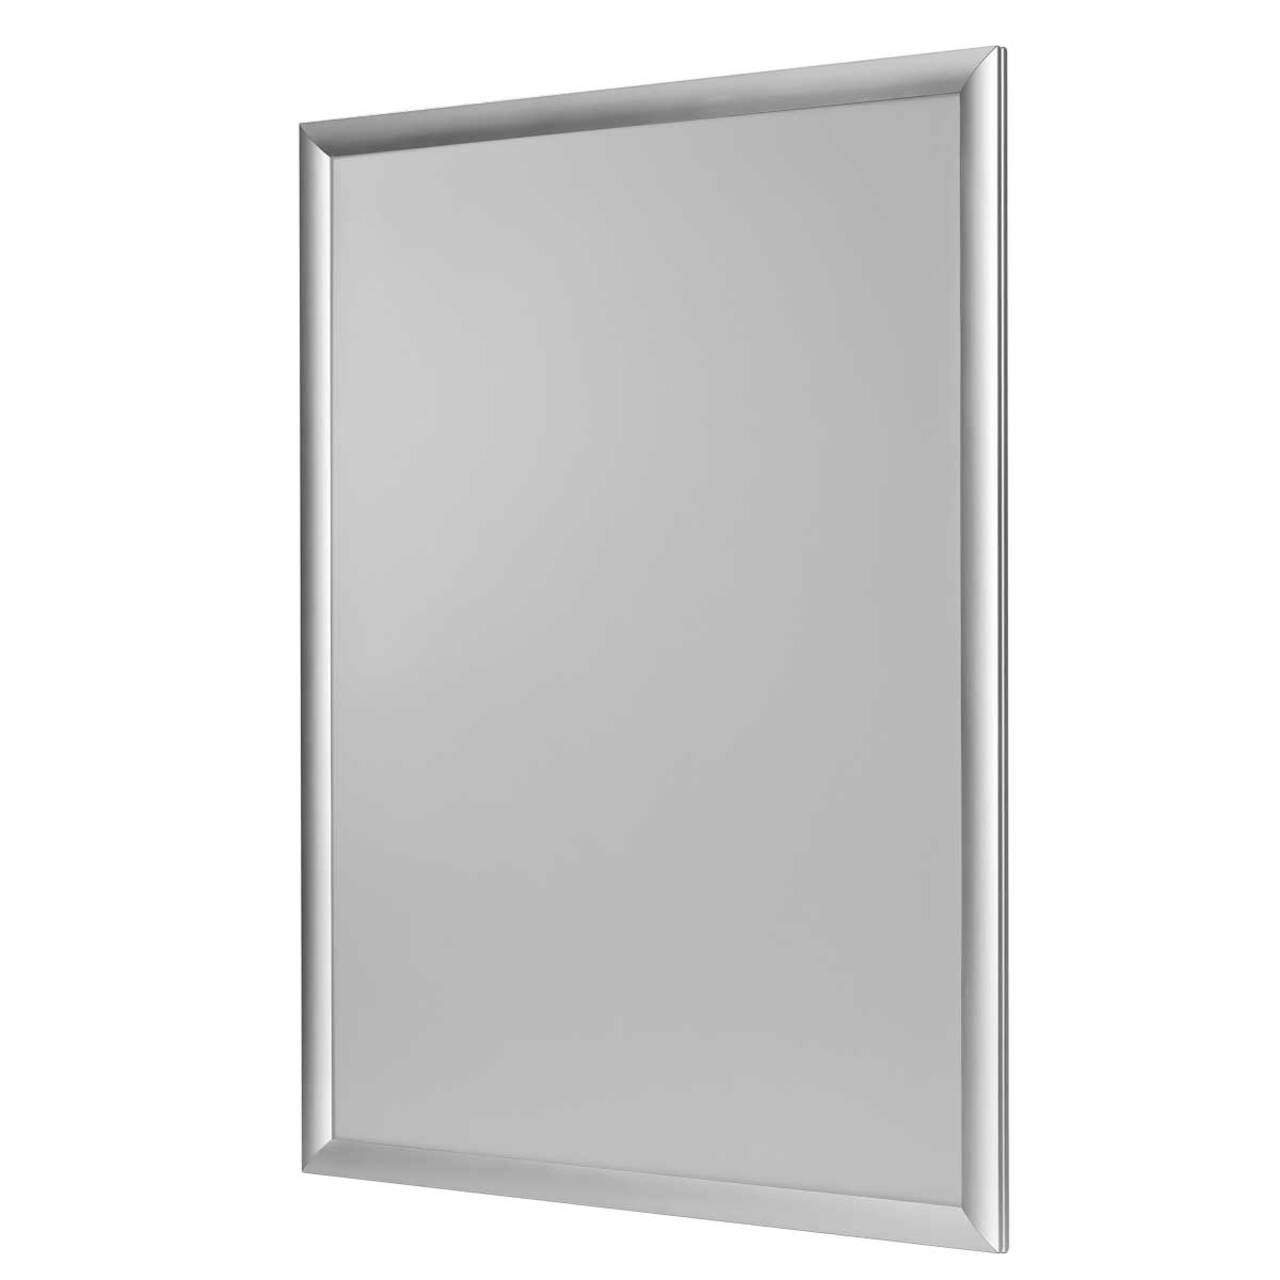 Window Frame 25, ramă click din aluminiu pentru ferestre A2, JJ DISPLAYS, 420 x 594 mm